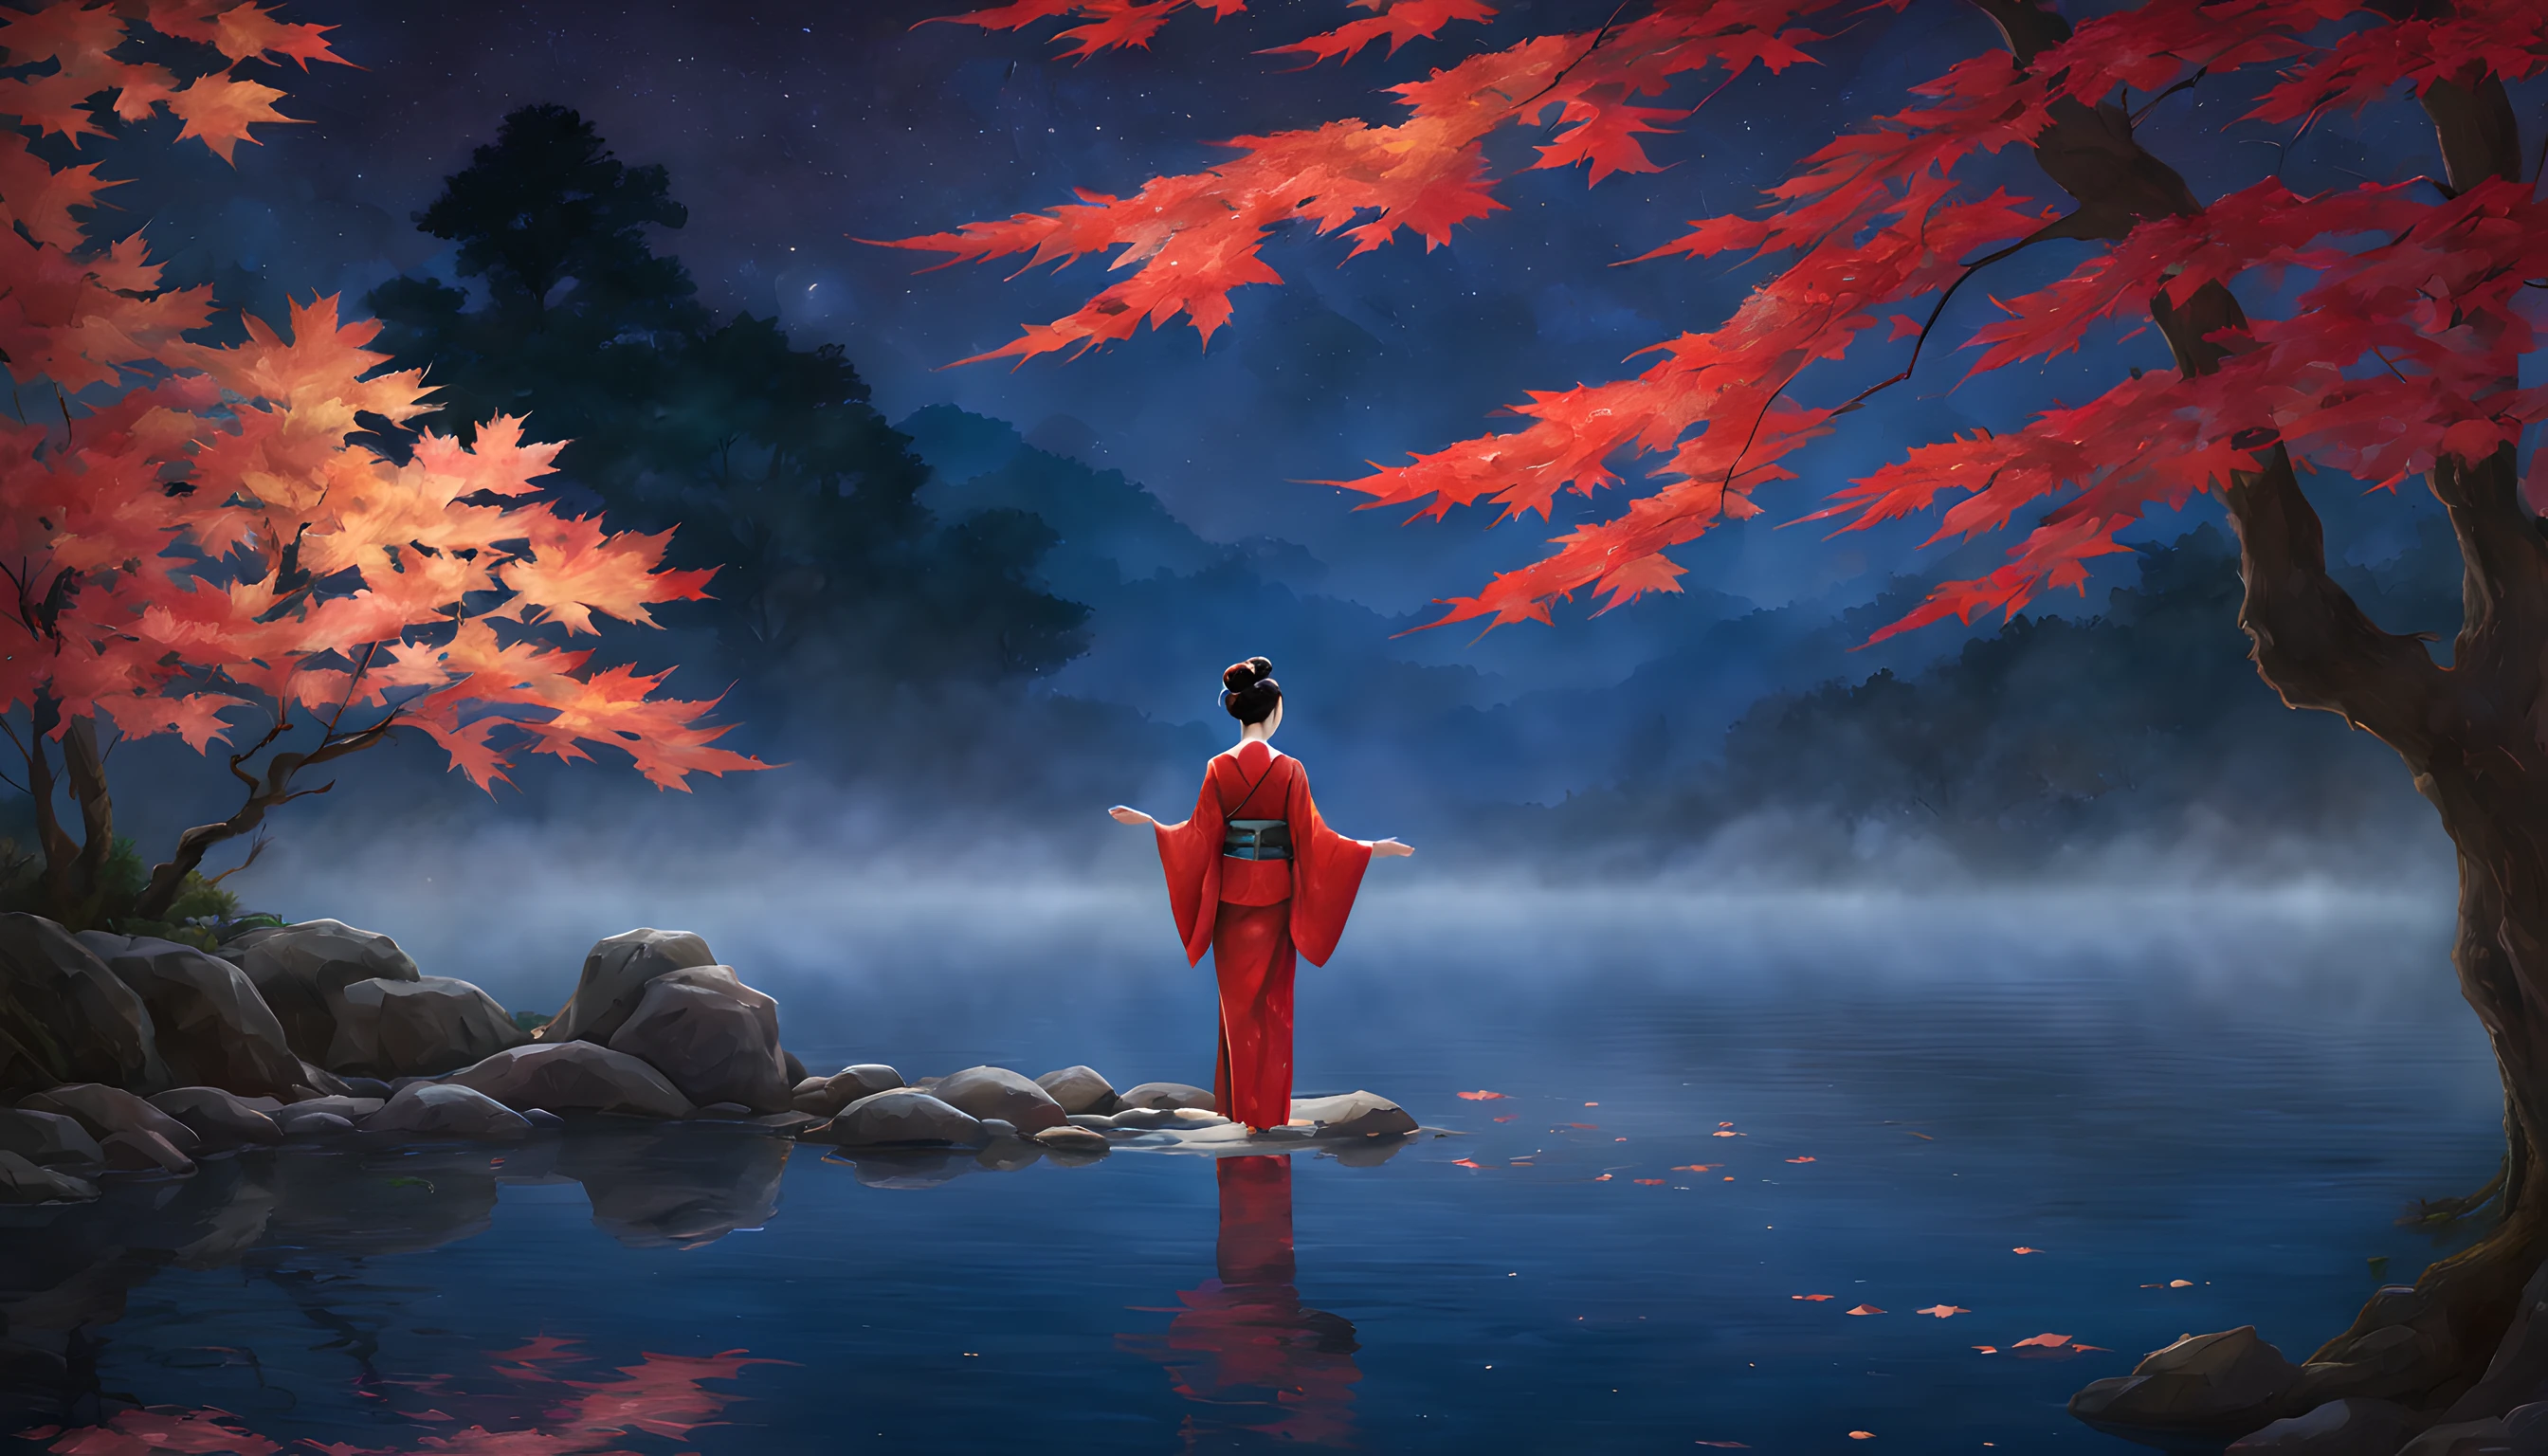 "Gestalten Sie eine bezaubernde Nachtszene mit einem ruhigen Teich, umhüllt von den feurigen Farben des herbstlichen Ahornblattes. Die Komposition sollte die Prominenz der Ahornblätter und des majestätischen Ahornbaums betonen, der in der Nähe steht. Im Vordergrund, eine Japanerin in ihren Vierzigern steht anmutig, in einen leuchtend roten Kimono gehüllt. Der Kimono betont ihre Eleganz, und ihre Schönheit strahlt im Mondlicht. Sie ist eine Vision von zeitloser Anziehungskraft, Die Essenz der Saison einfangen. Die Frau blickt auf den schimmernden Teich, wo die Spiegelung der Ahornblätter auf der Wasseroberfläche tanzt. Ihr Ausdruck ist von heiterer Kontemplation geprägt, während sie in die ruhige Schönheit der Nacht eintaucht. Im Hintergrund ist der prächtige Ahornbaum zu sehen, seine Zweige sind mit prächtigen Blättern geschmückt, die das Mondlicht einzufangen scheinen. Der Teich spiegelt die ätherische Szene, den Zauber des Augenblicks noch verstärken. Die Gesamtkomposition sollte ein Gefühl der Gelassenheit und Ehrfurcht vor der Schönheit der Natur vermitteln. Stellen Sie sicher, dass die bezaubernde Schönheit der Frau und die Brillanz der Ahornblätter in diesem faszinierenden Herbstbild im Mittelpunkt stehen."